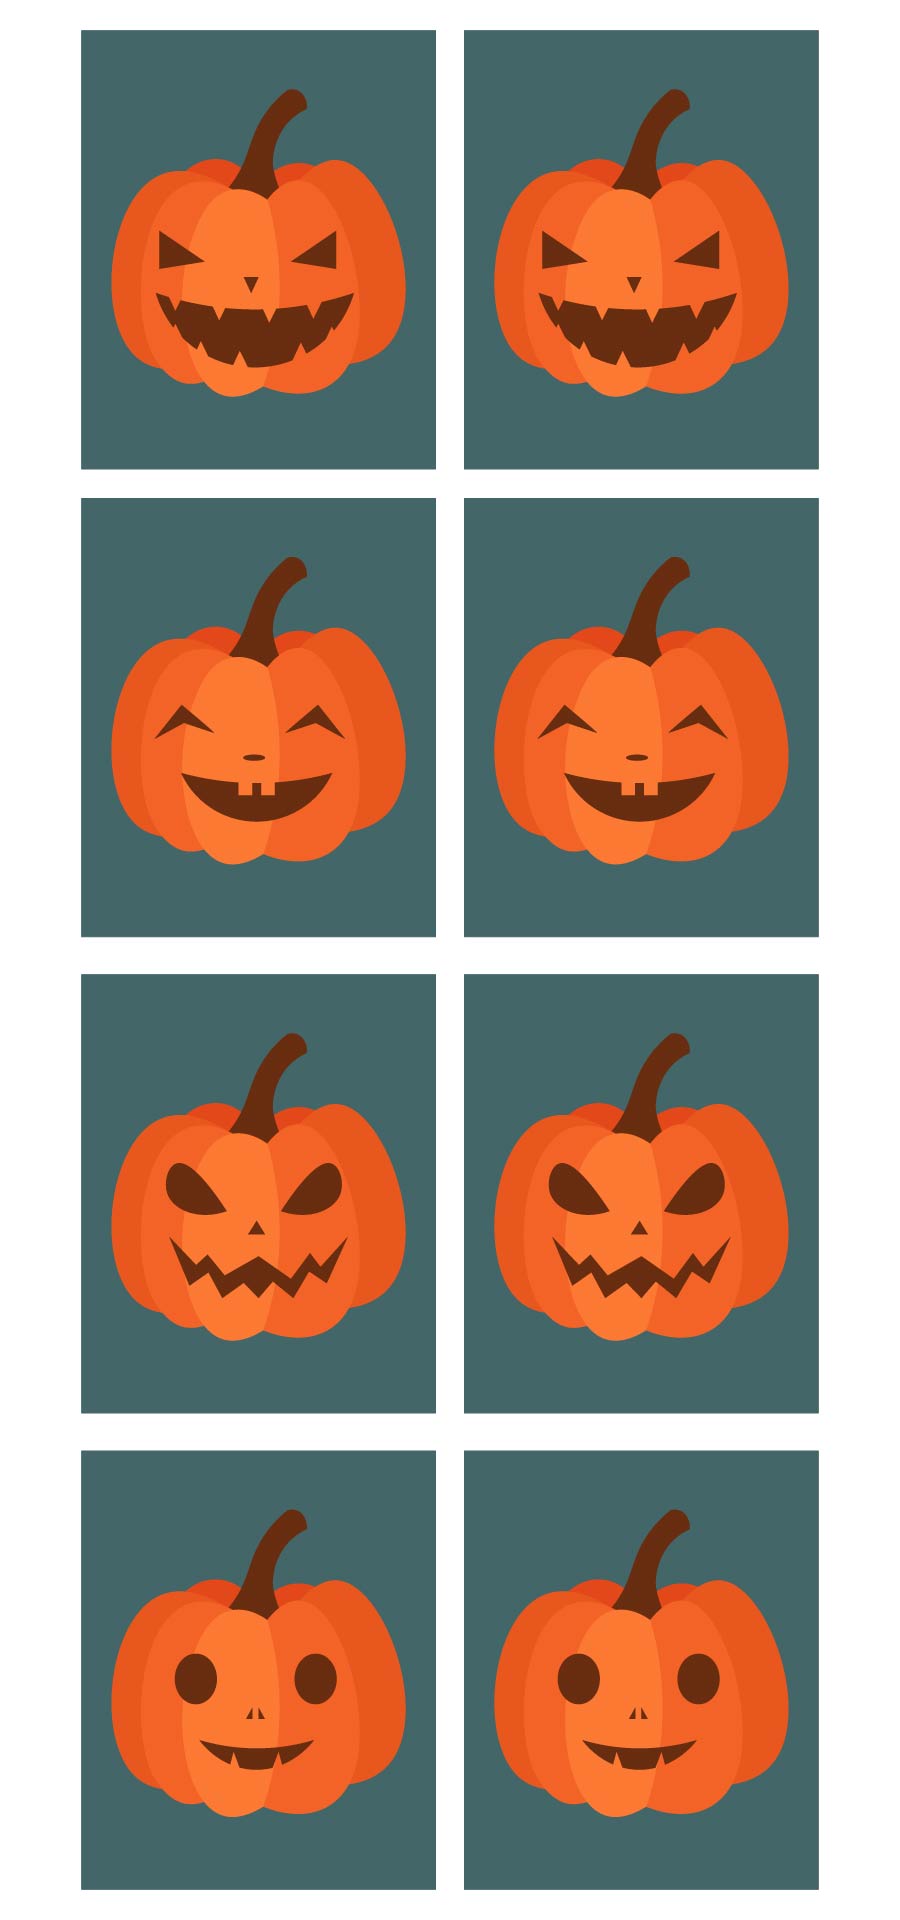 Pumpkin Matching Game Printable